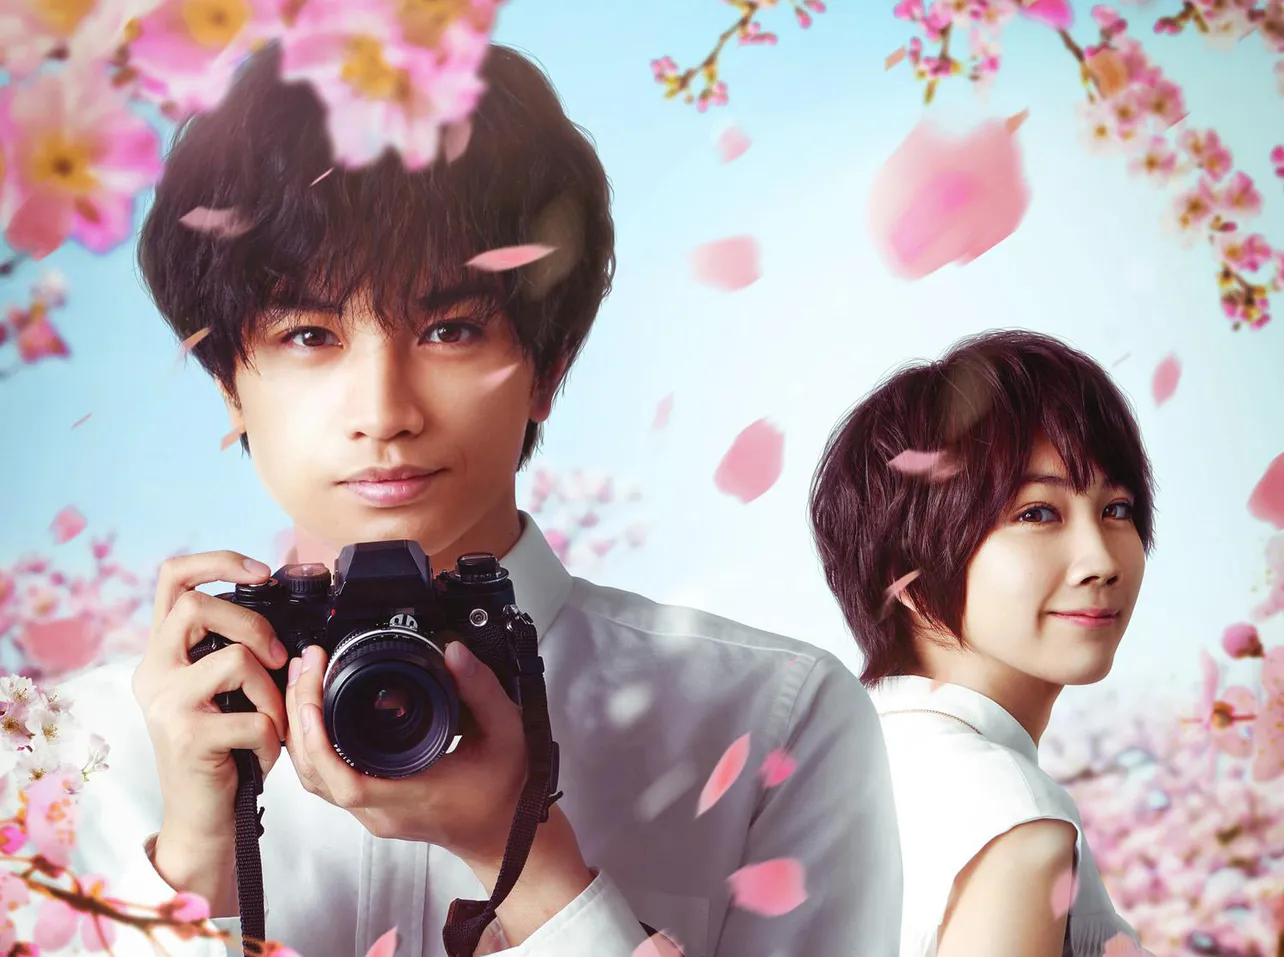 「桜のような僕の恋人」で共演する中島健人、松本穂香(写真左から)